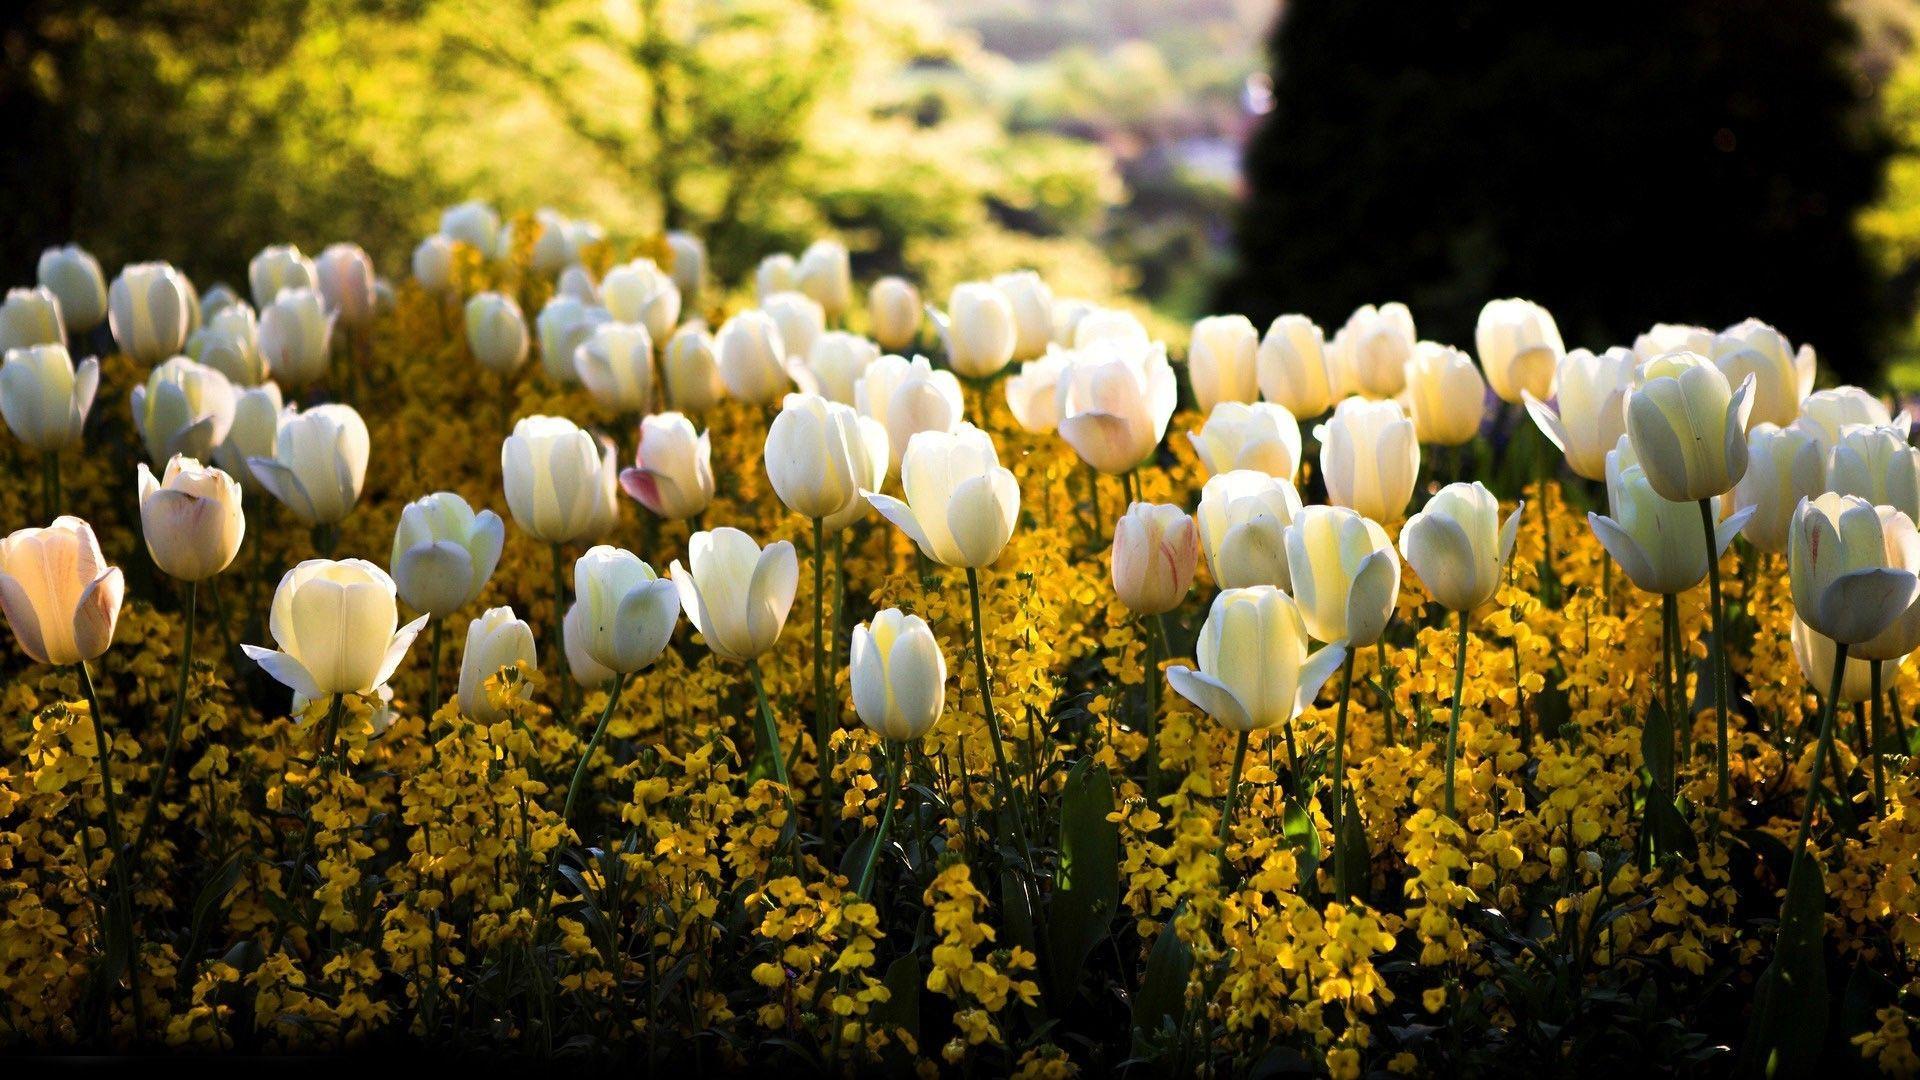 White Tulips. White tulips, Tulips, Flowers